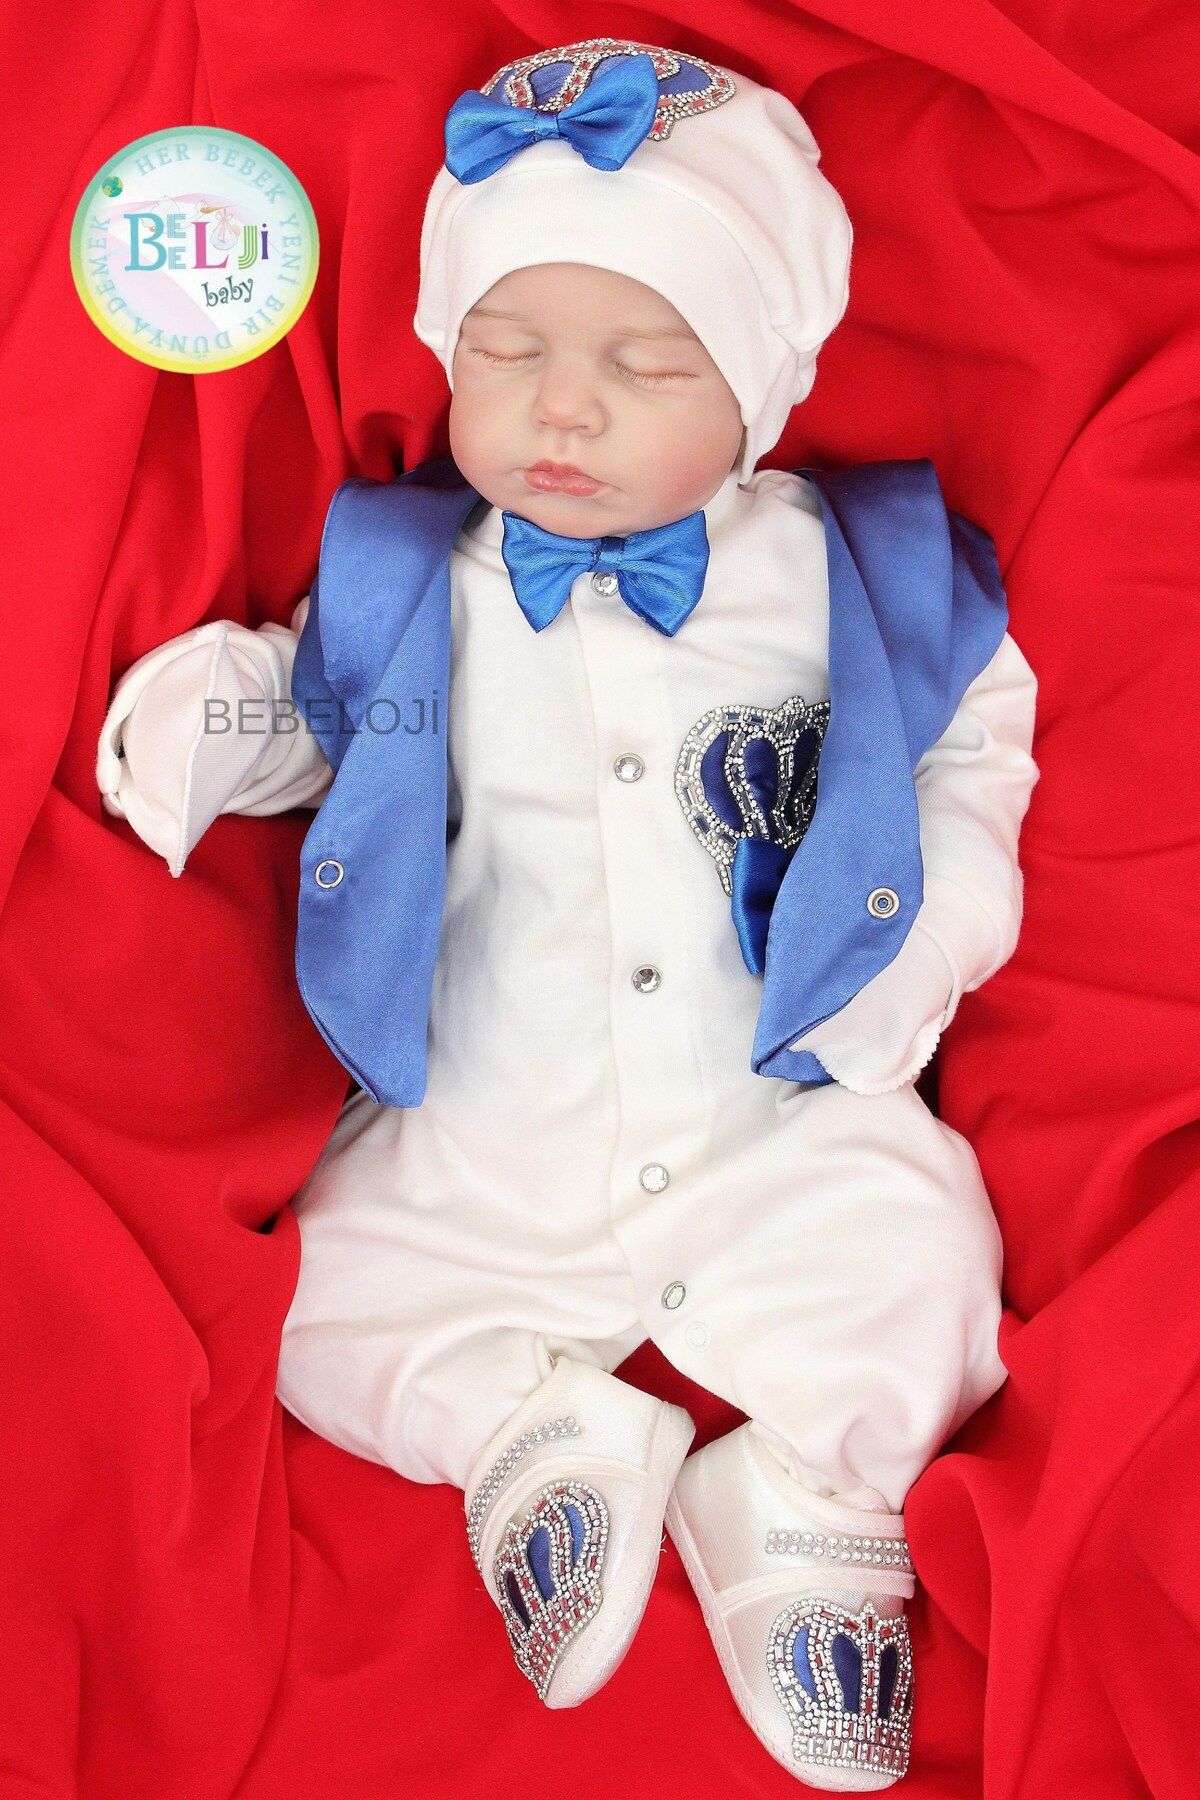 Bebeloji Baby Prince Erkek Bebek Tulum lu 5'li Hastane Çıkışı Yenidoğan Kıyafeti